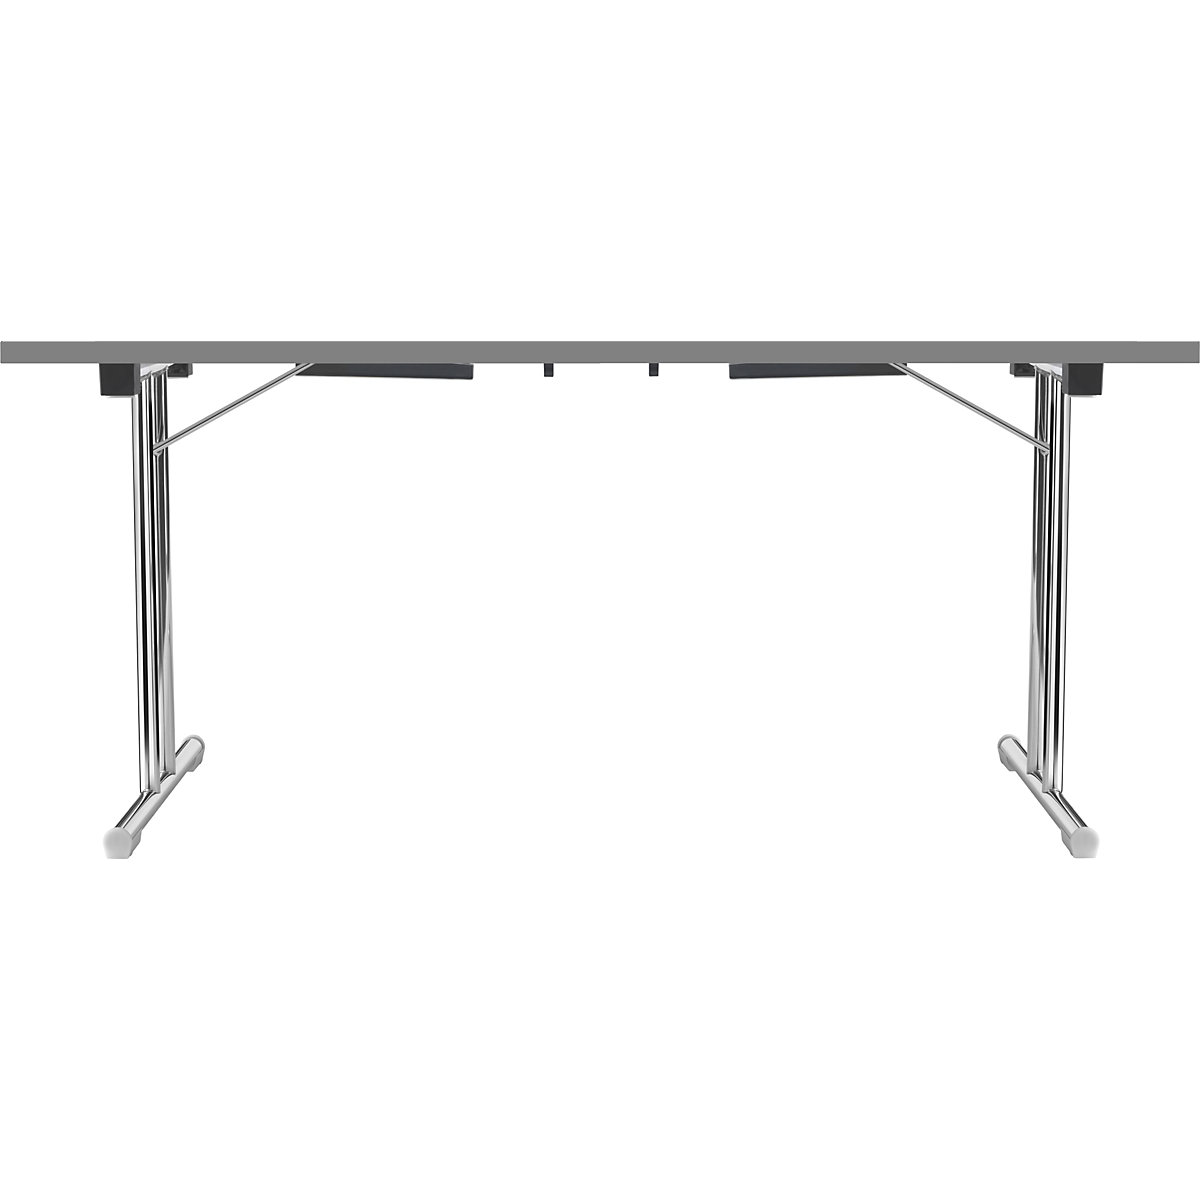 Zložljiva miza z dvojnim podnožjem v obliki črke T, ogrodje iz okrogle jeklene cevi, kromirano, bela/antracitna, ŠxG 1400 x 700 mm-16